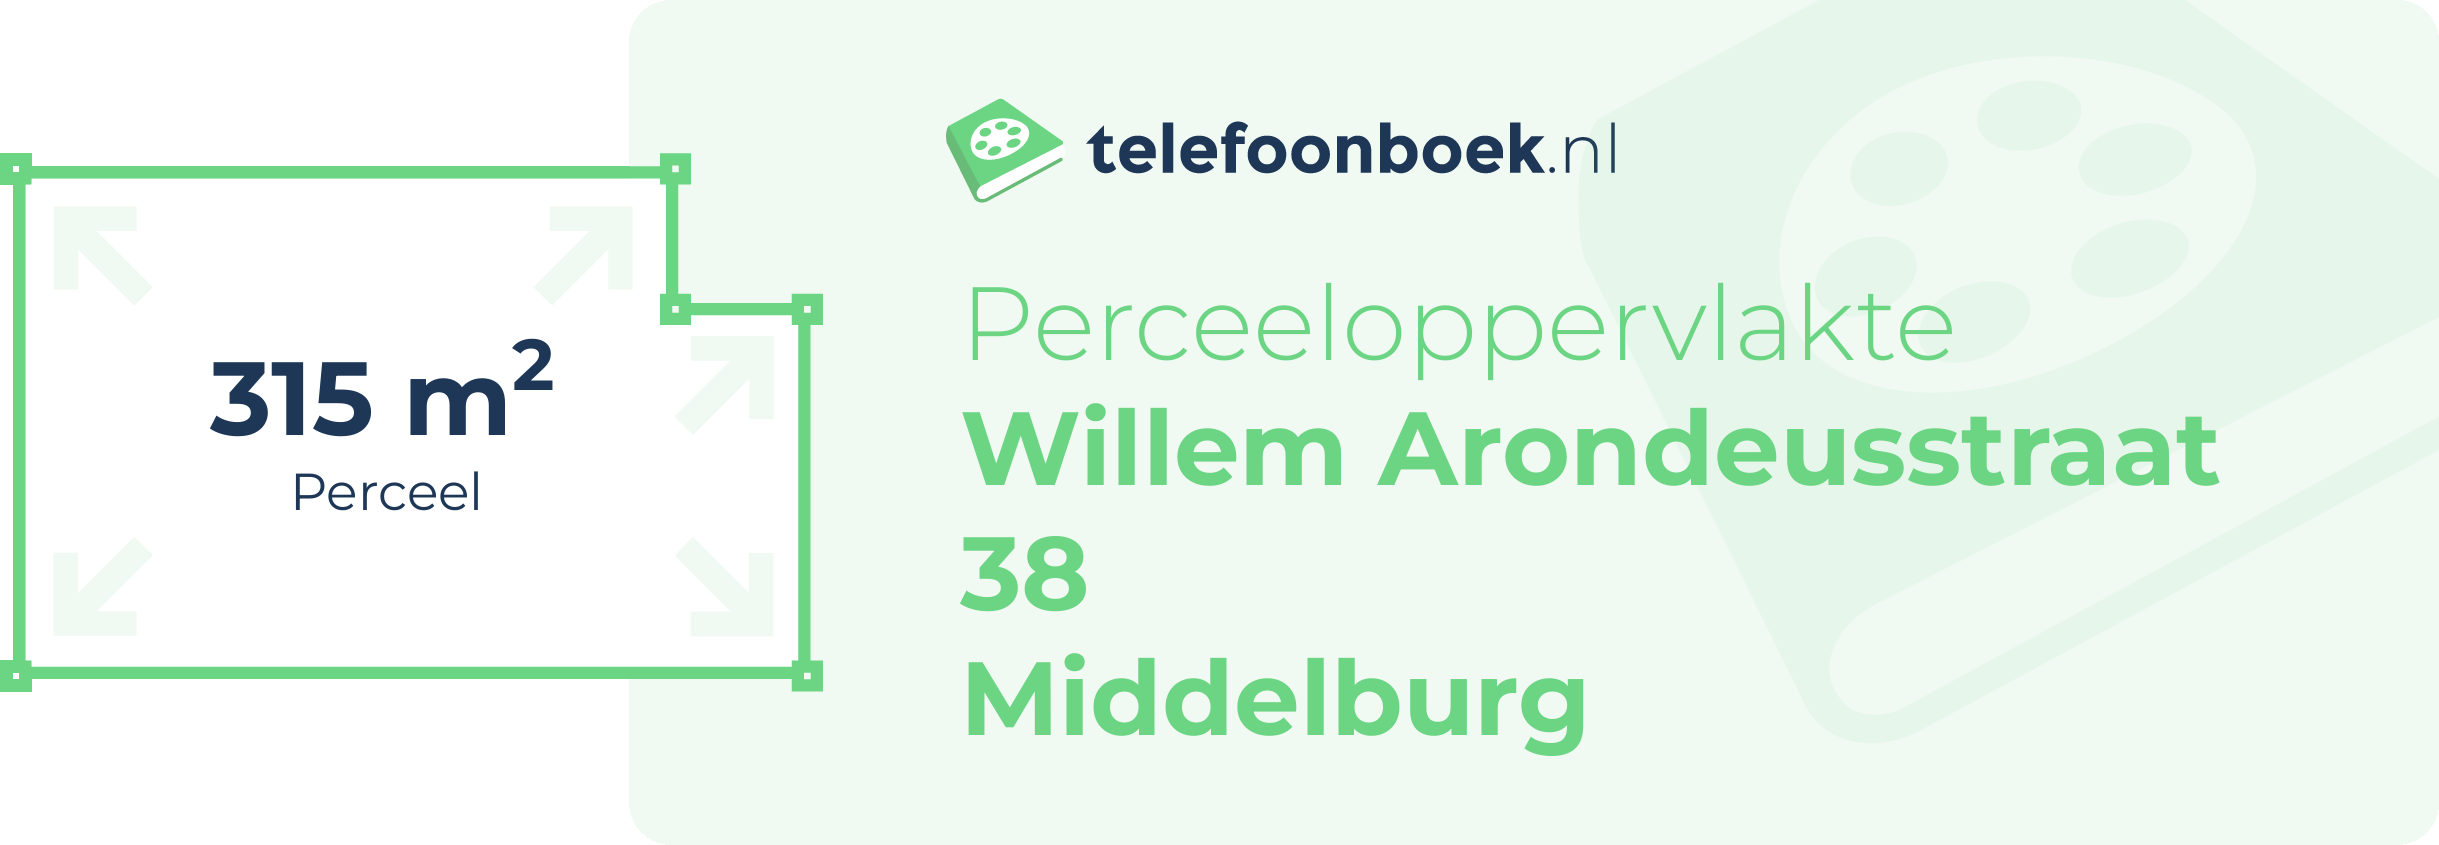 Perceeloppervlakte Willem Arondeusstraat 38 Middelburg